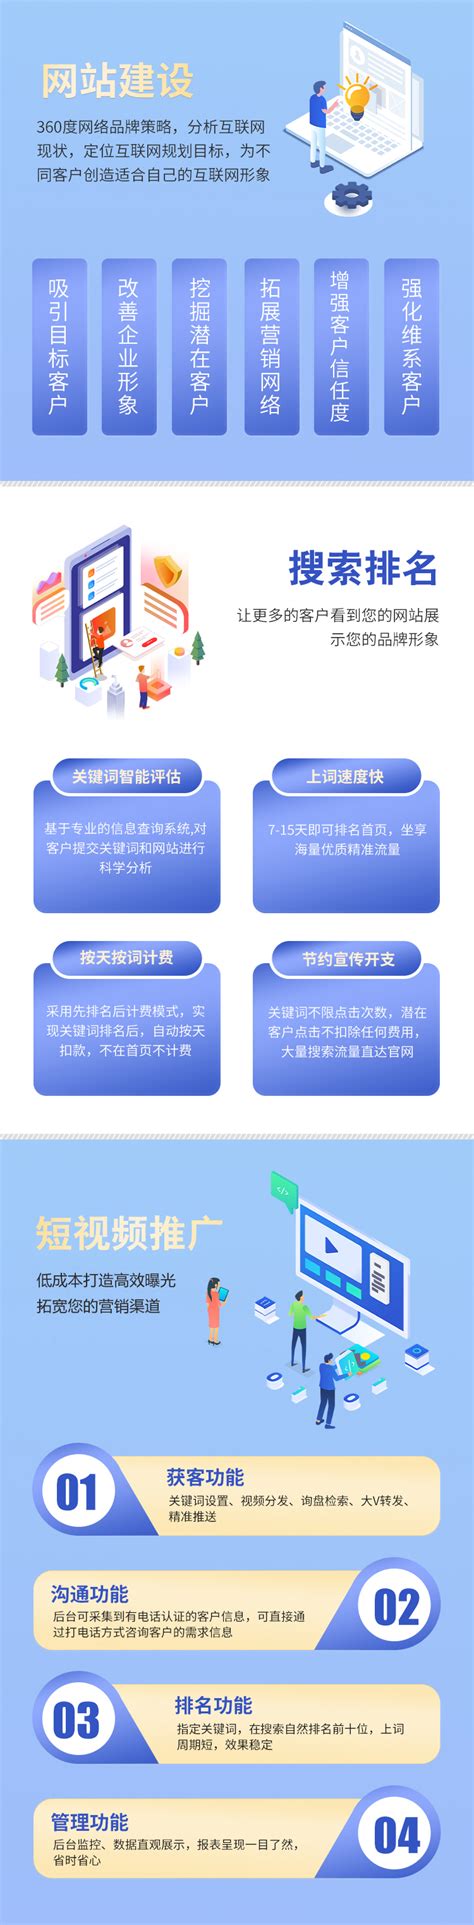 浙江网站建设机构